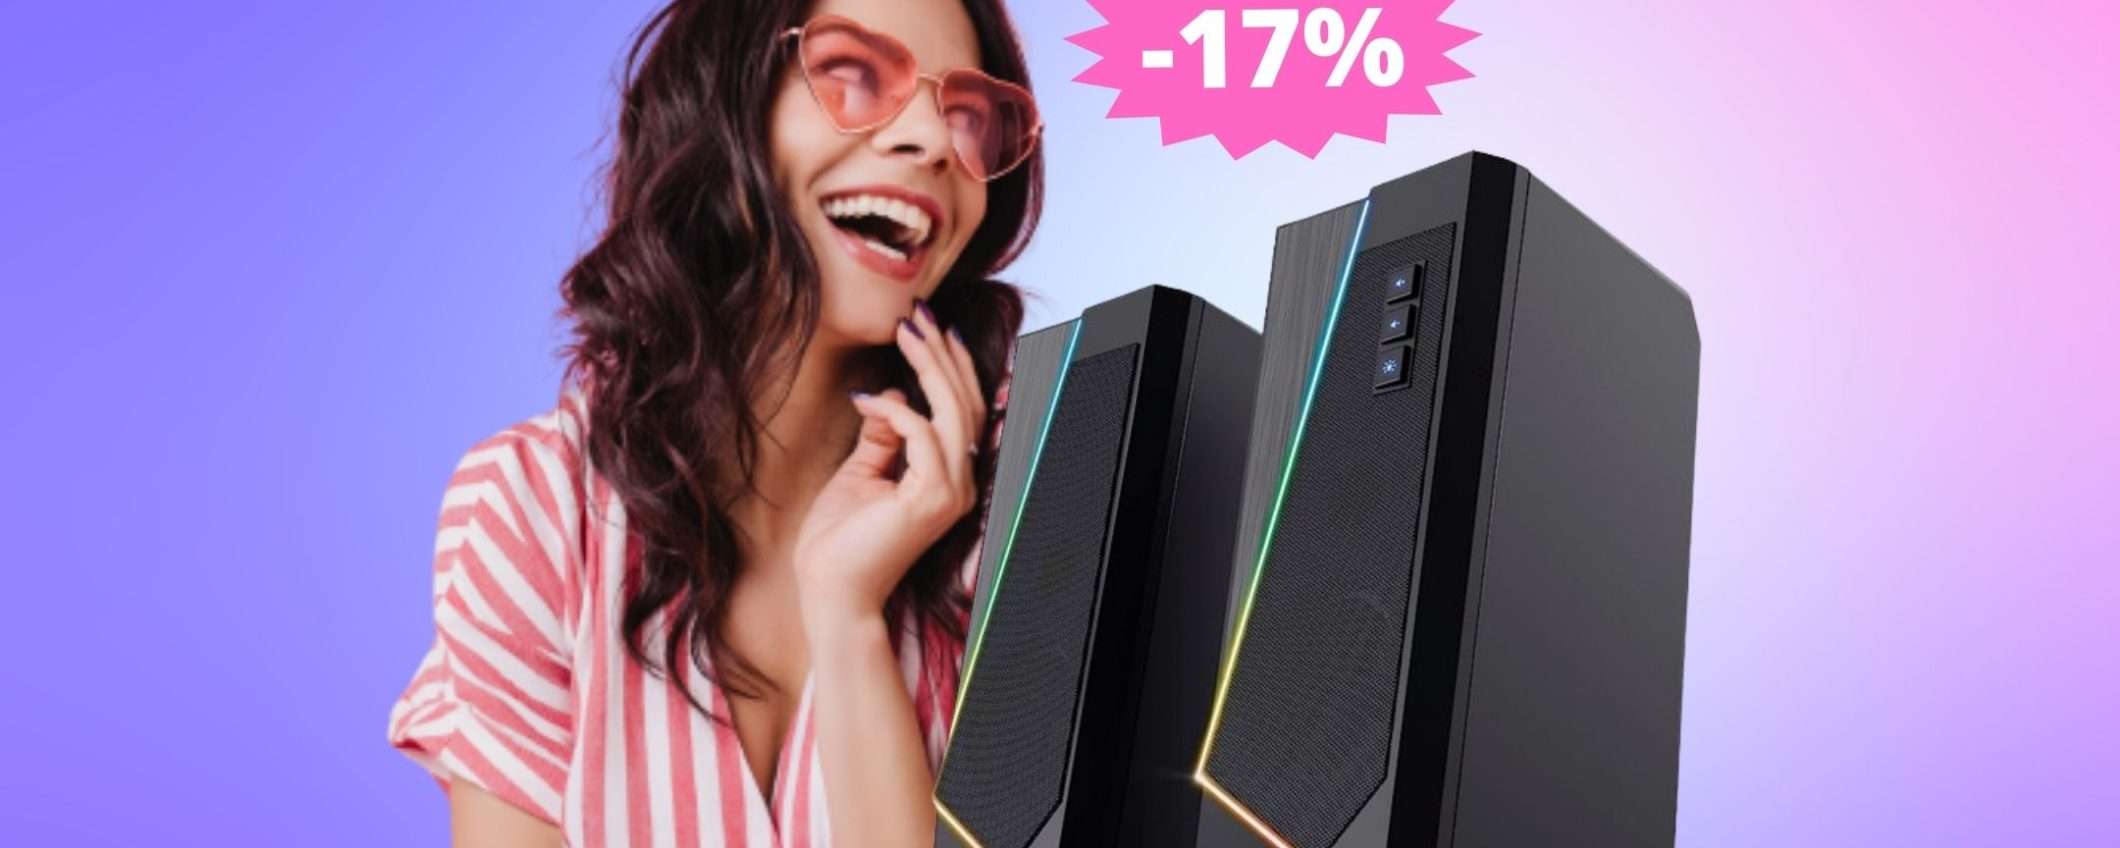 Casse PC Trust Gaming GXT: SUPER sconto del 17% su Amazon